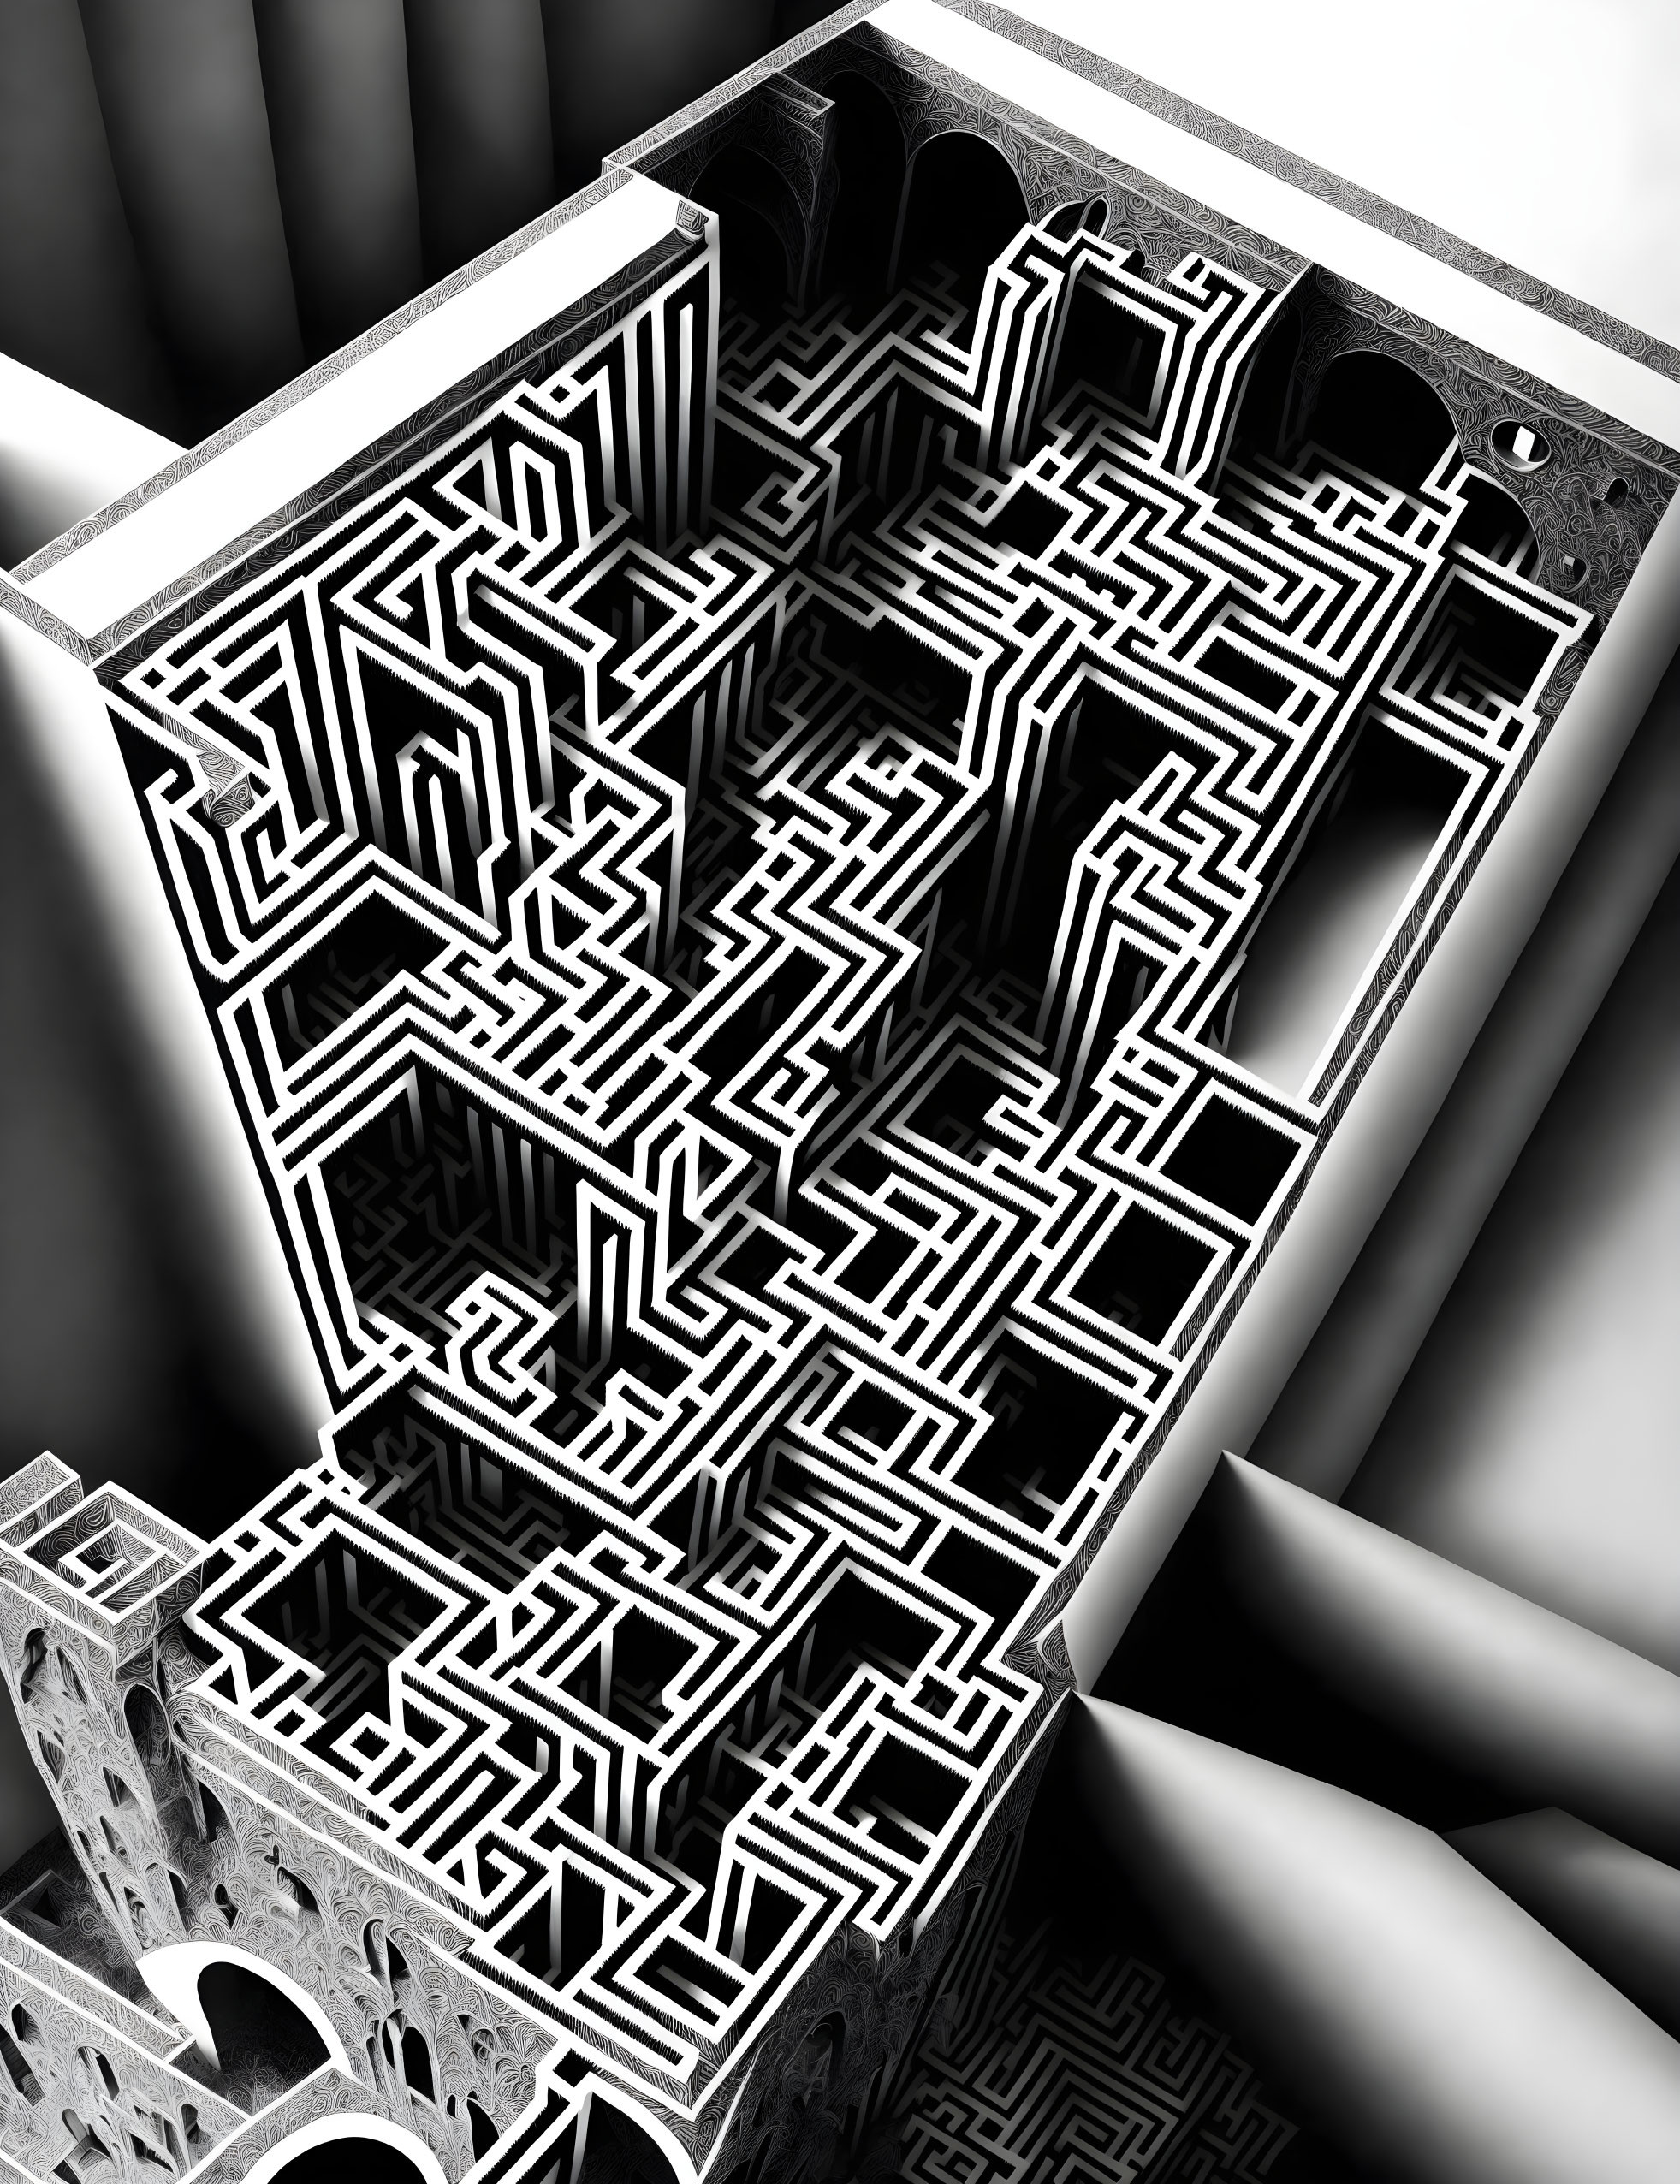 Life is like a maze.